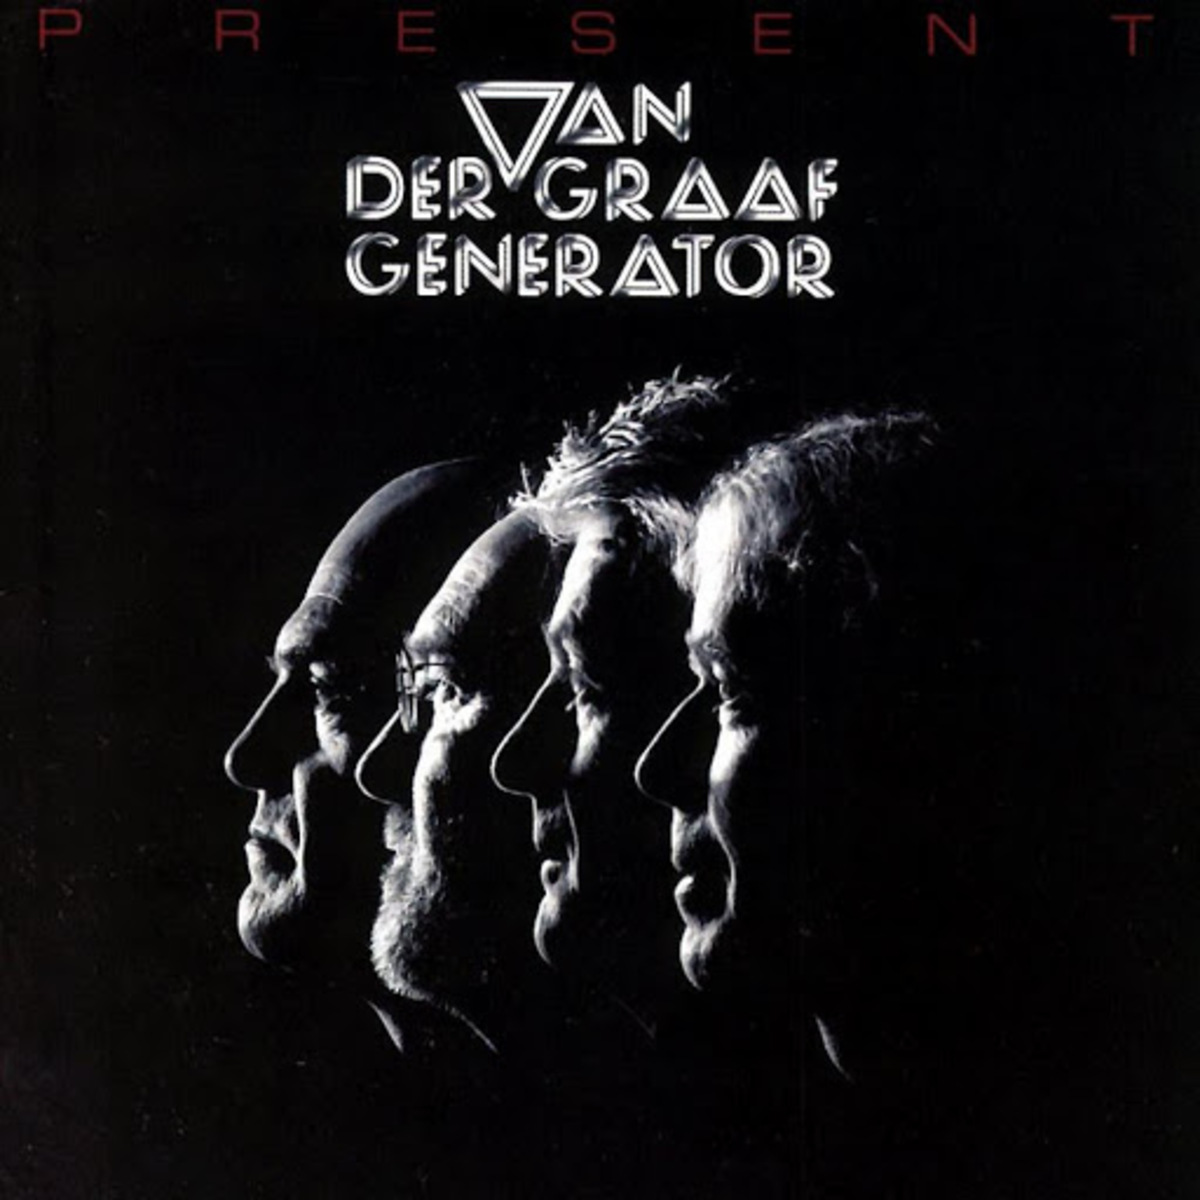 Van-der-graaf-generator-album-cover-present